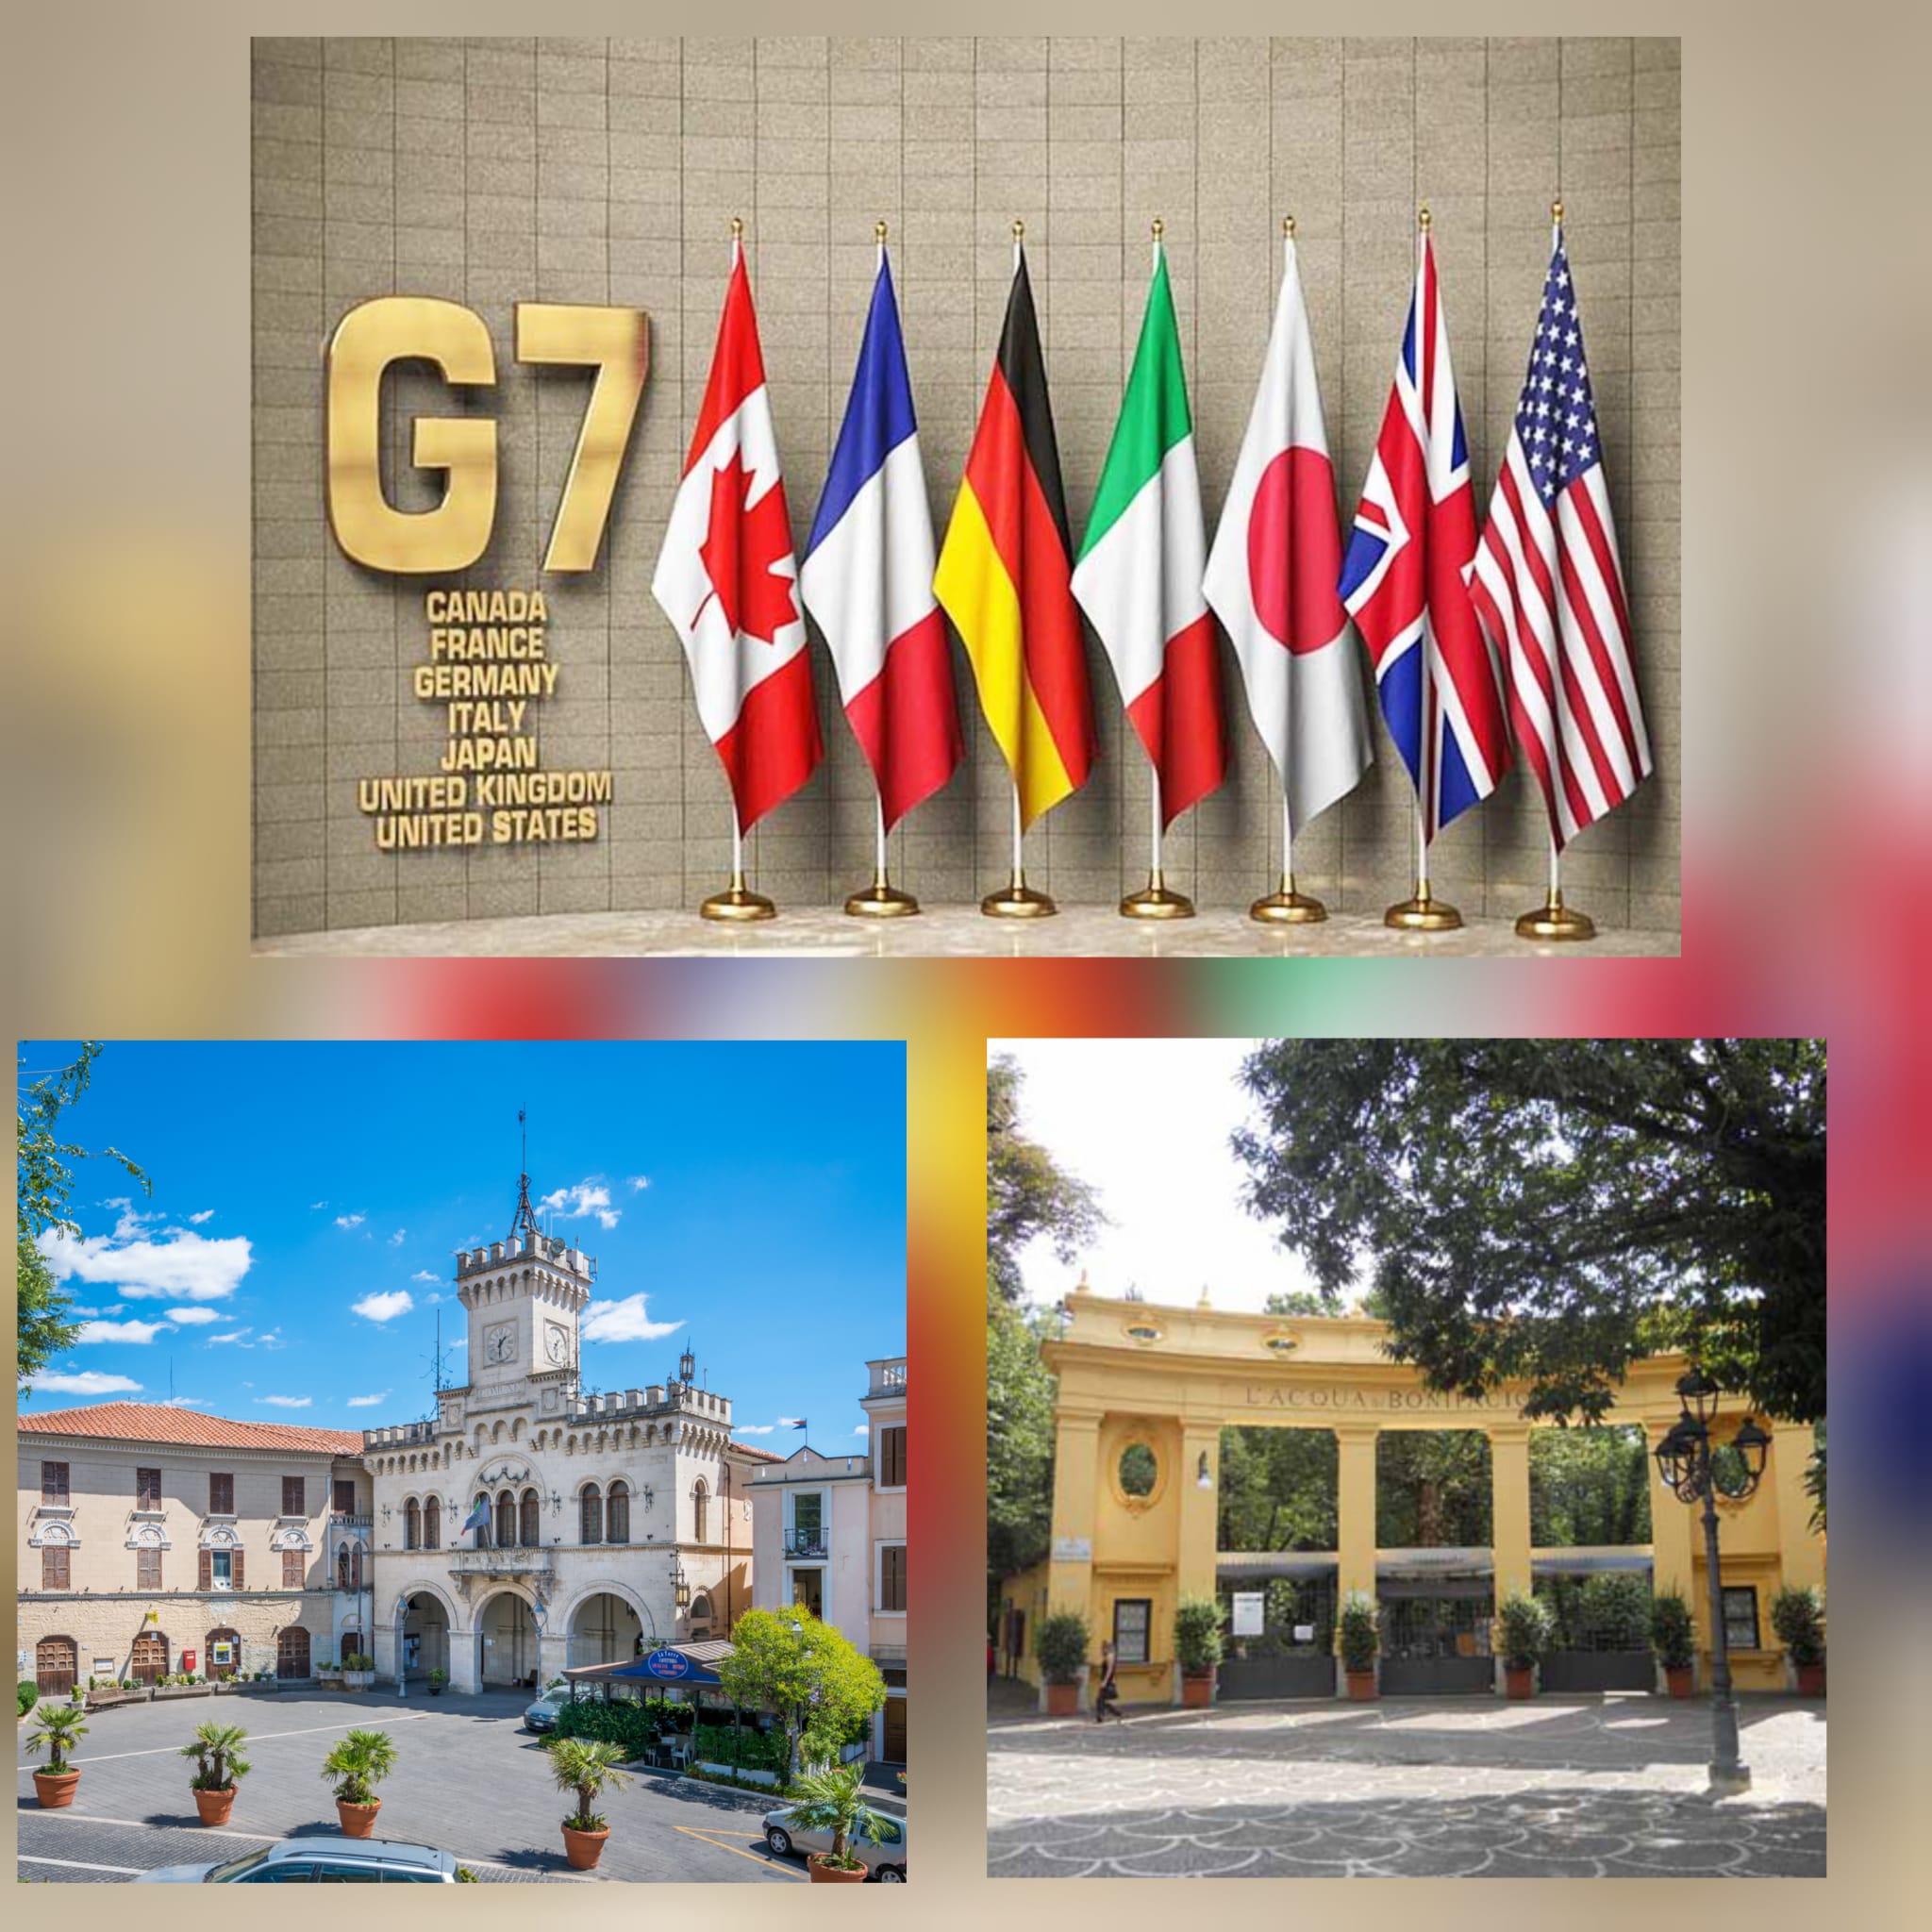 AL VIA LA PRESIDENZA ITALIANA DEL G7  ANCHE FIUGGI OSPITERÀ UNA DELLE  RIUNIONI MINISTERIALI  G7